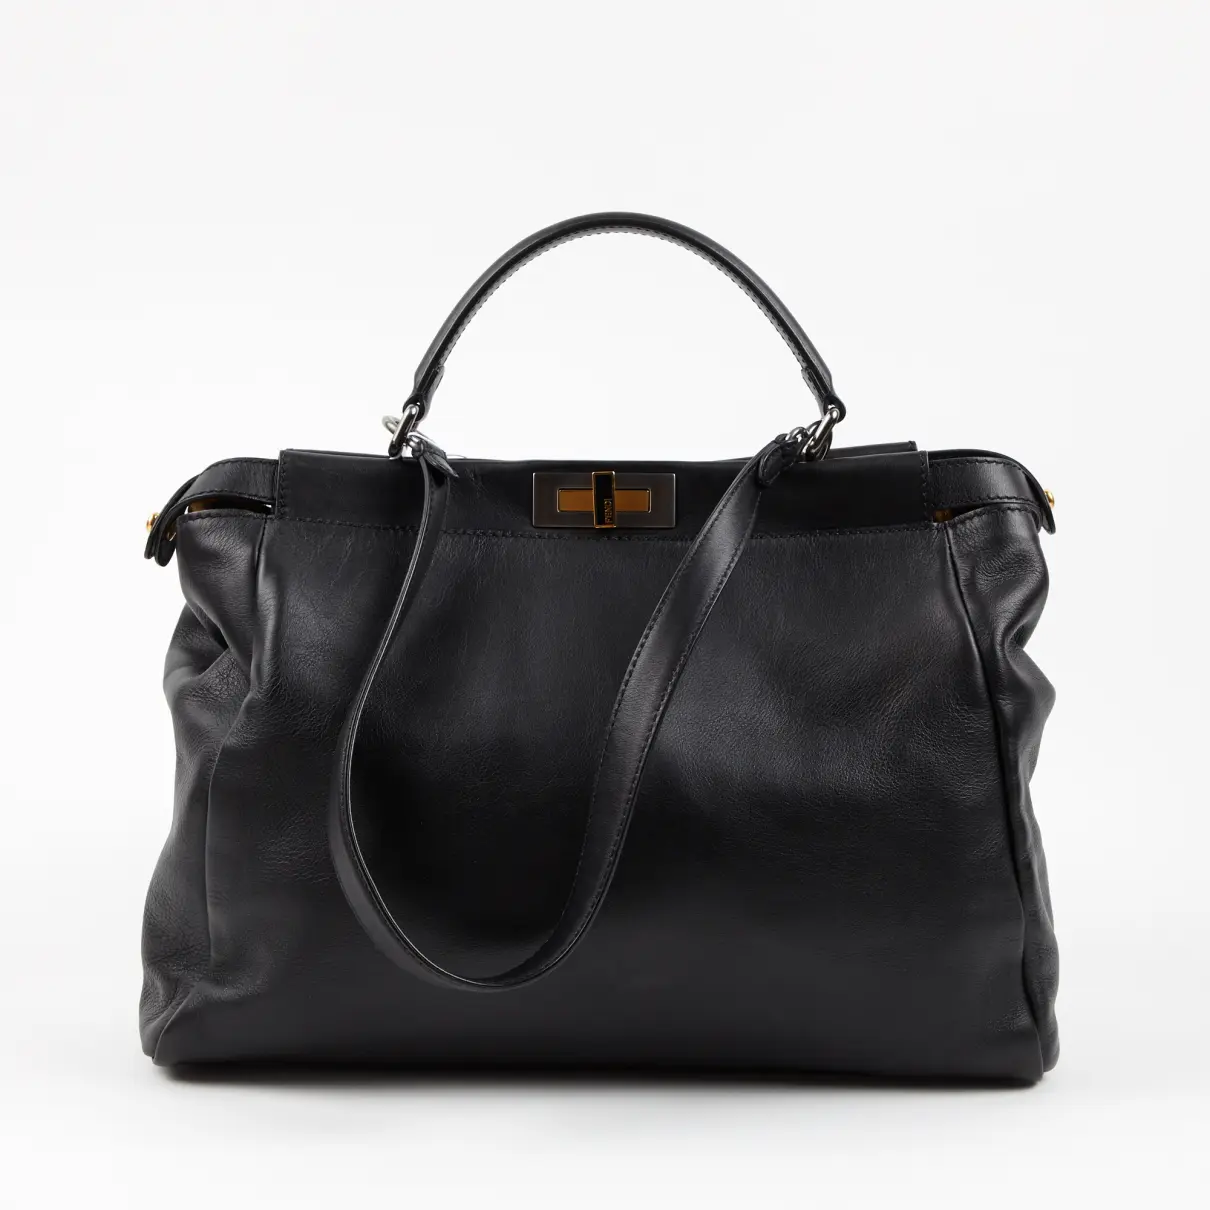 Buy Fendi Peekaboo leather handbag online